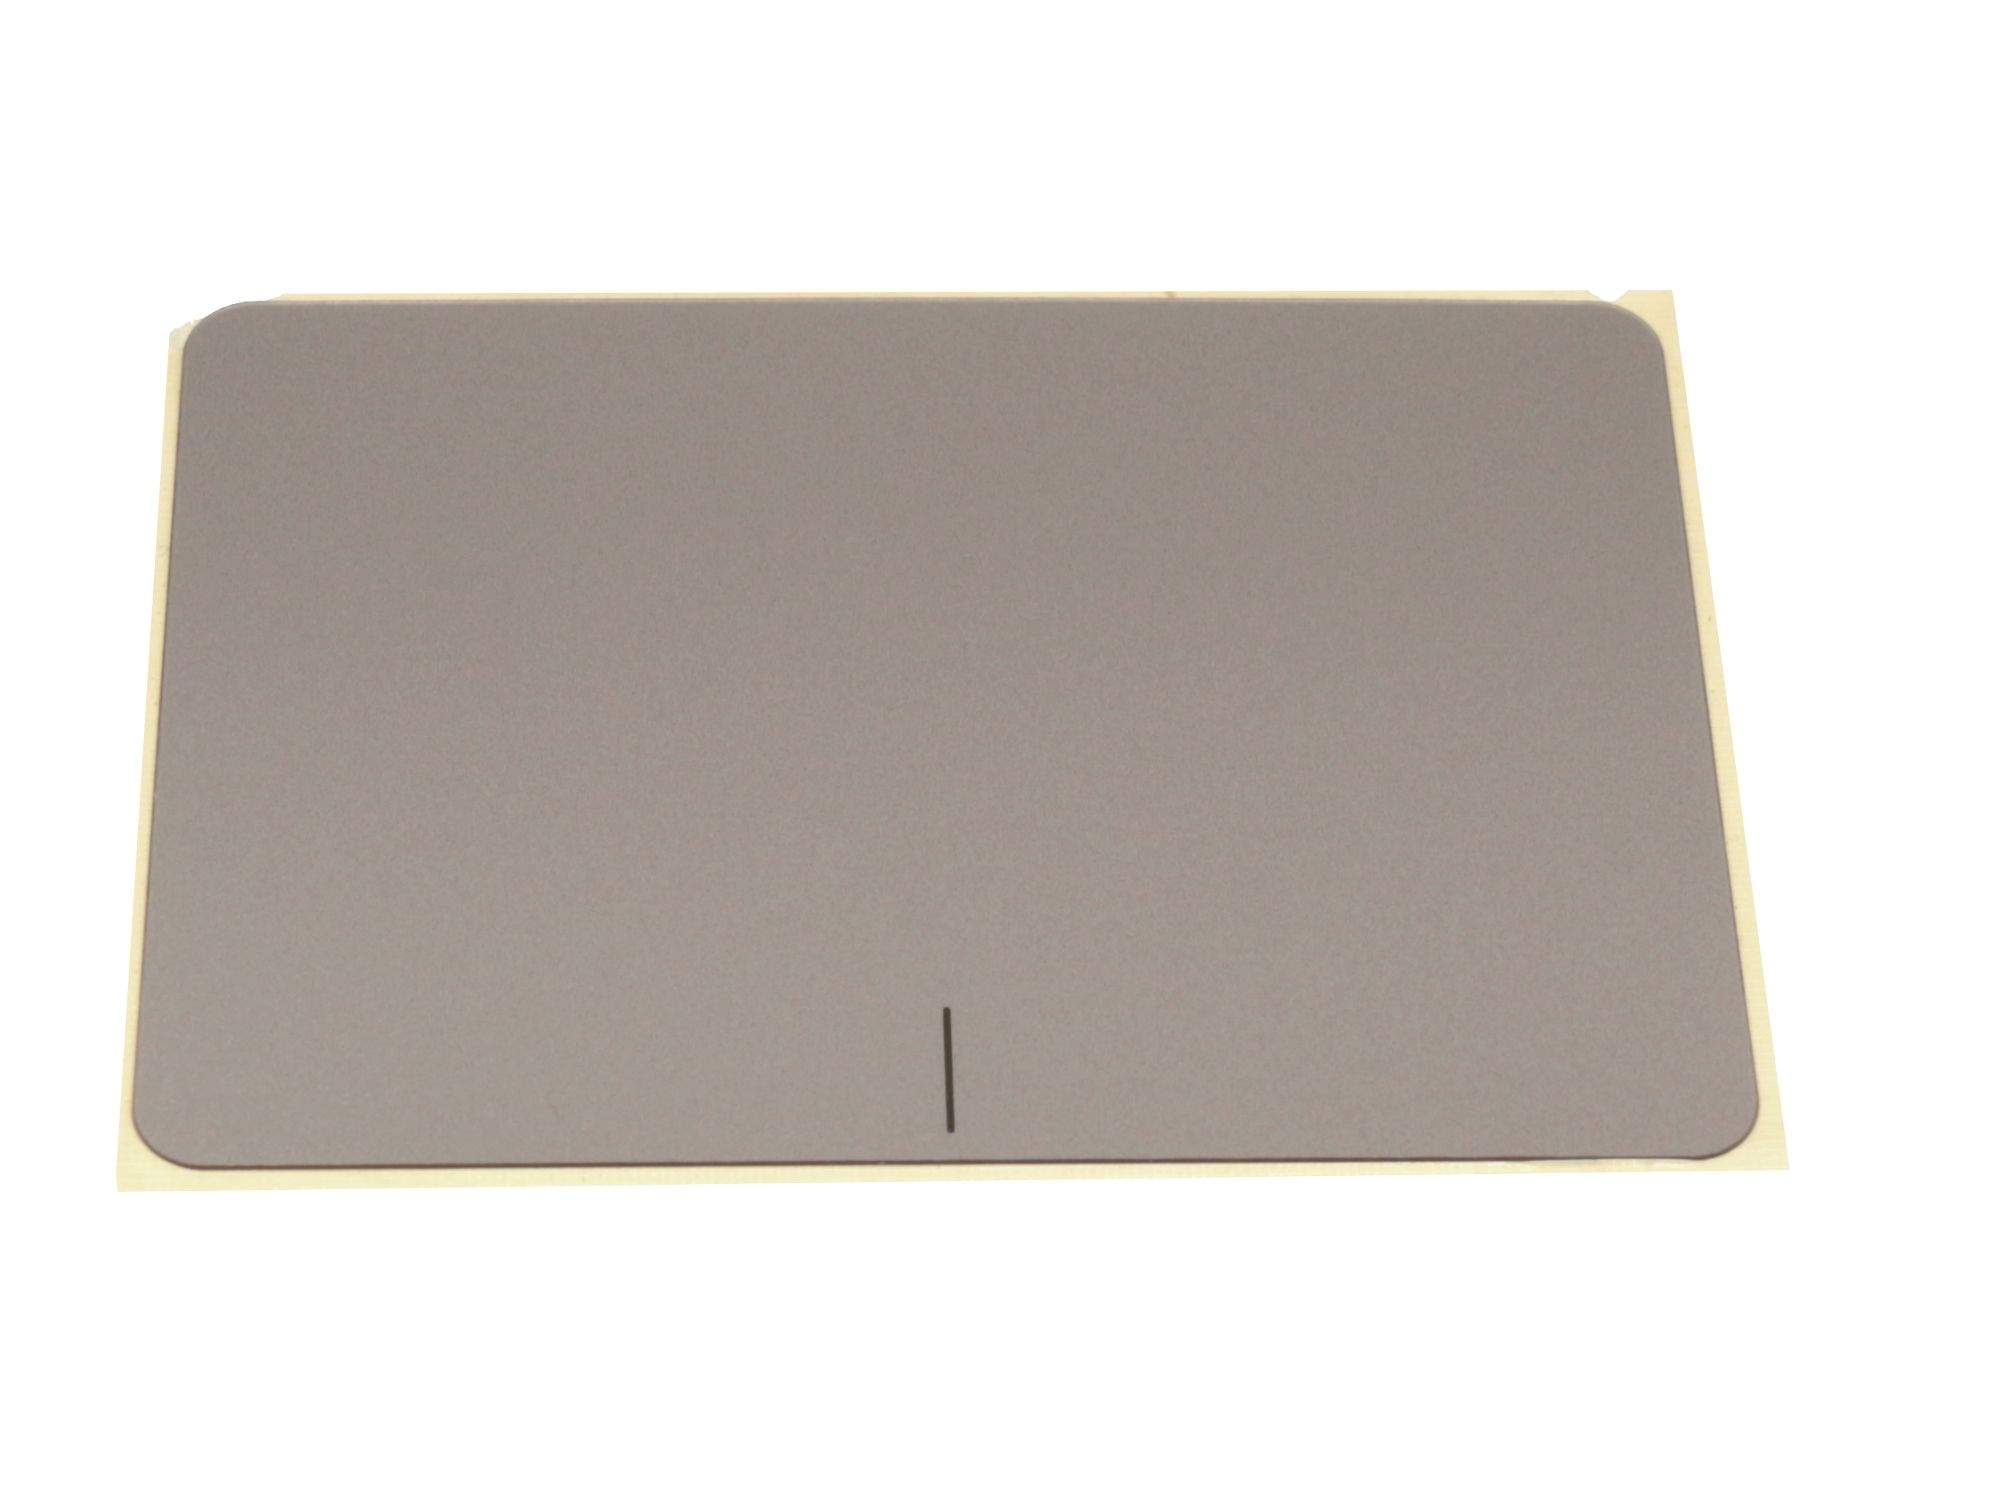 ASUS Touchpad Abdeckung braun für Asus F556UJ Serie